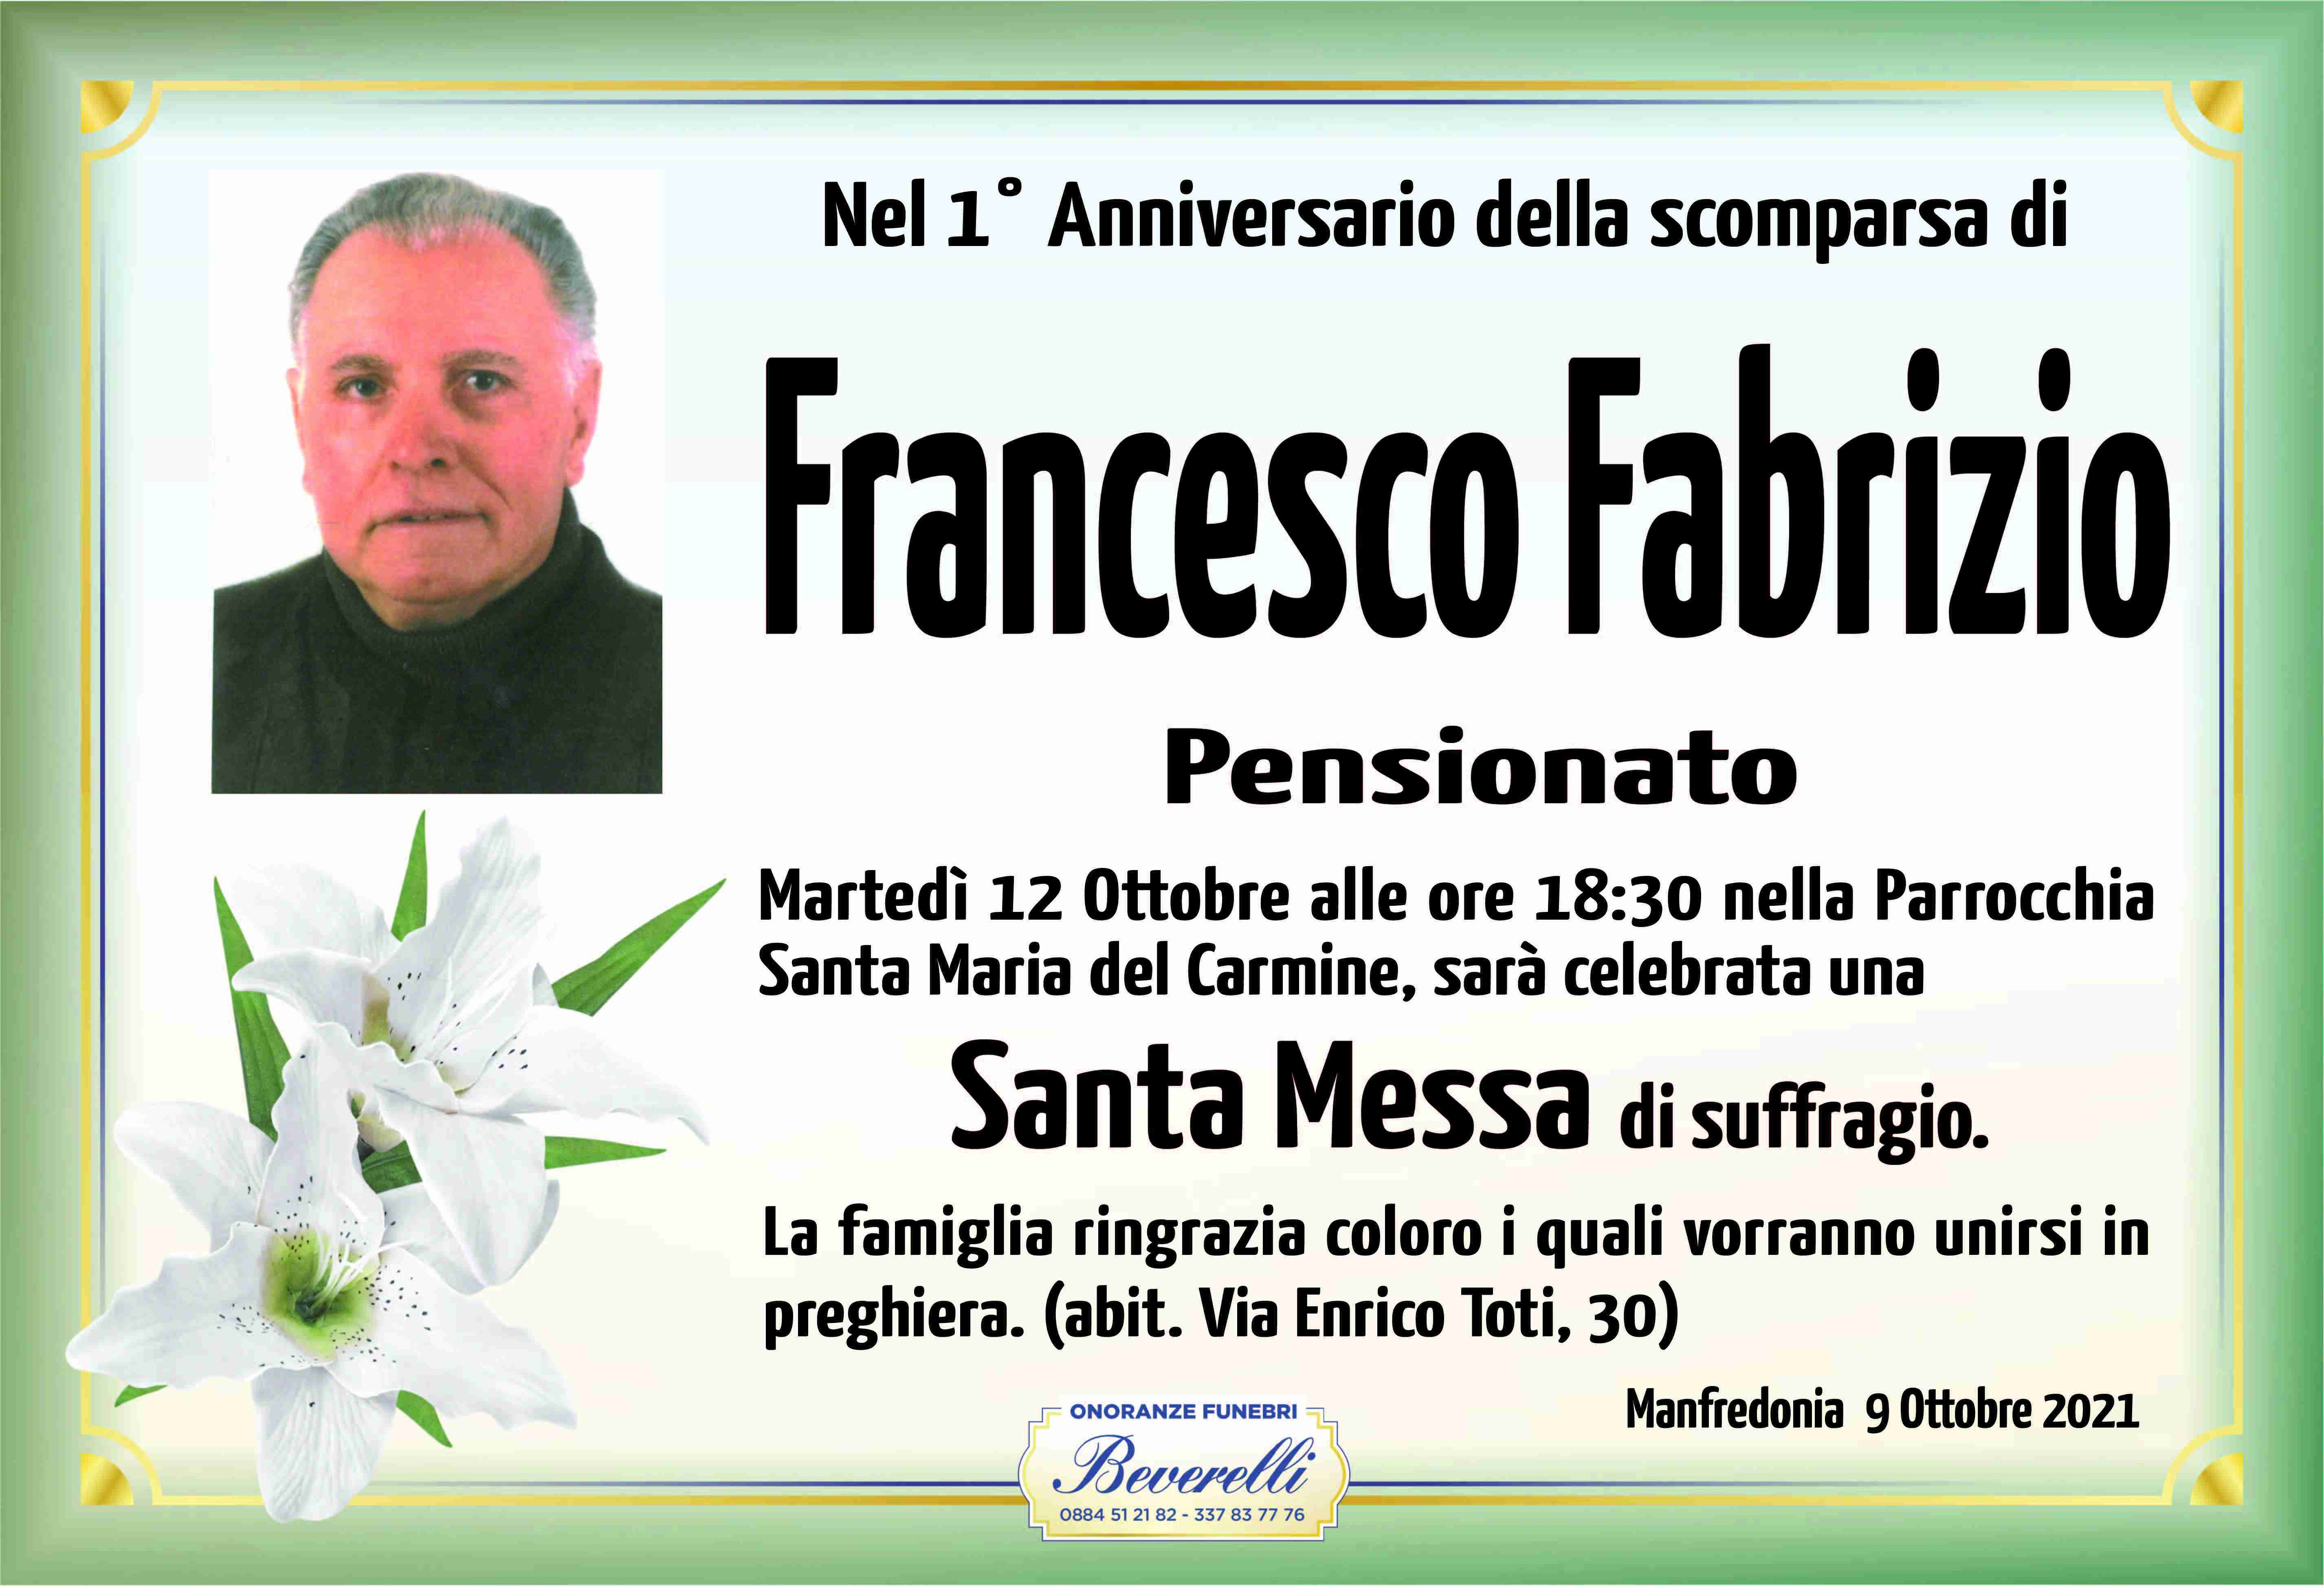 Francesco Saverio Fabrizio